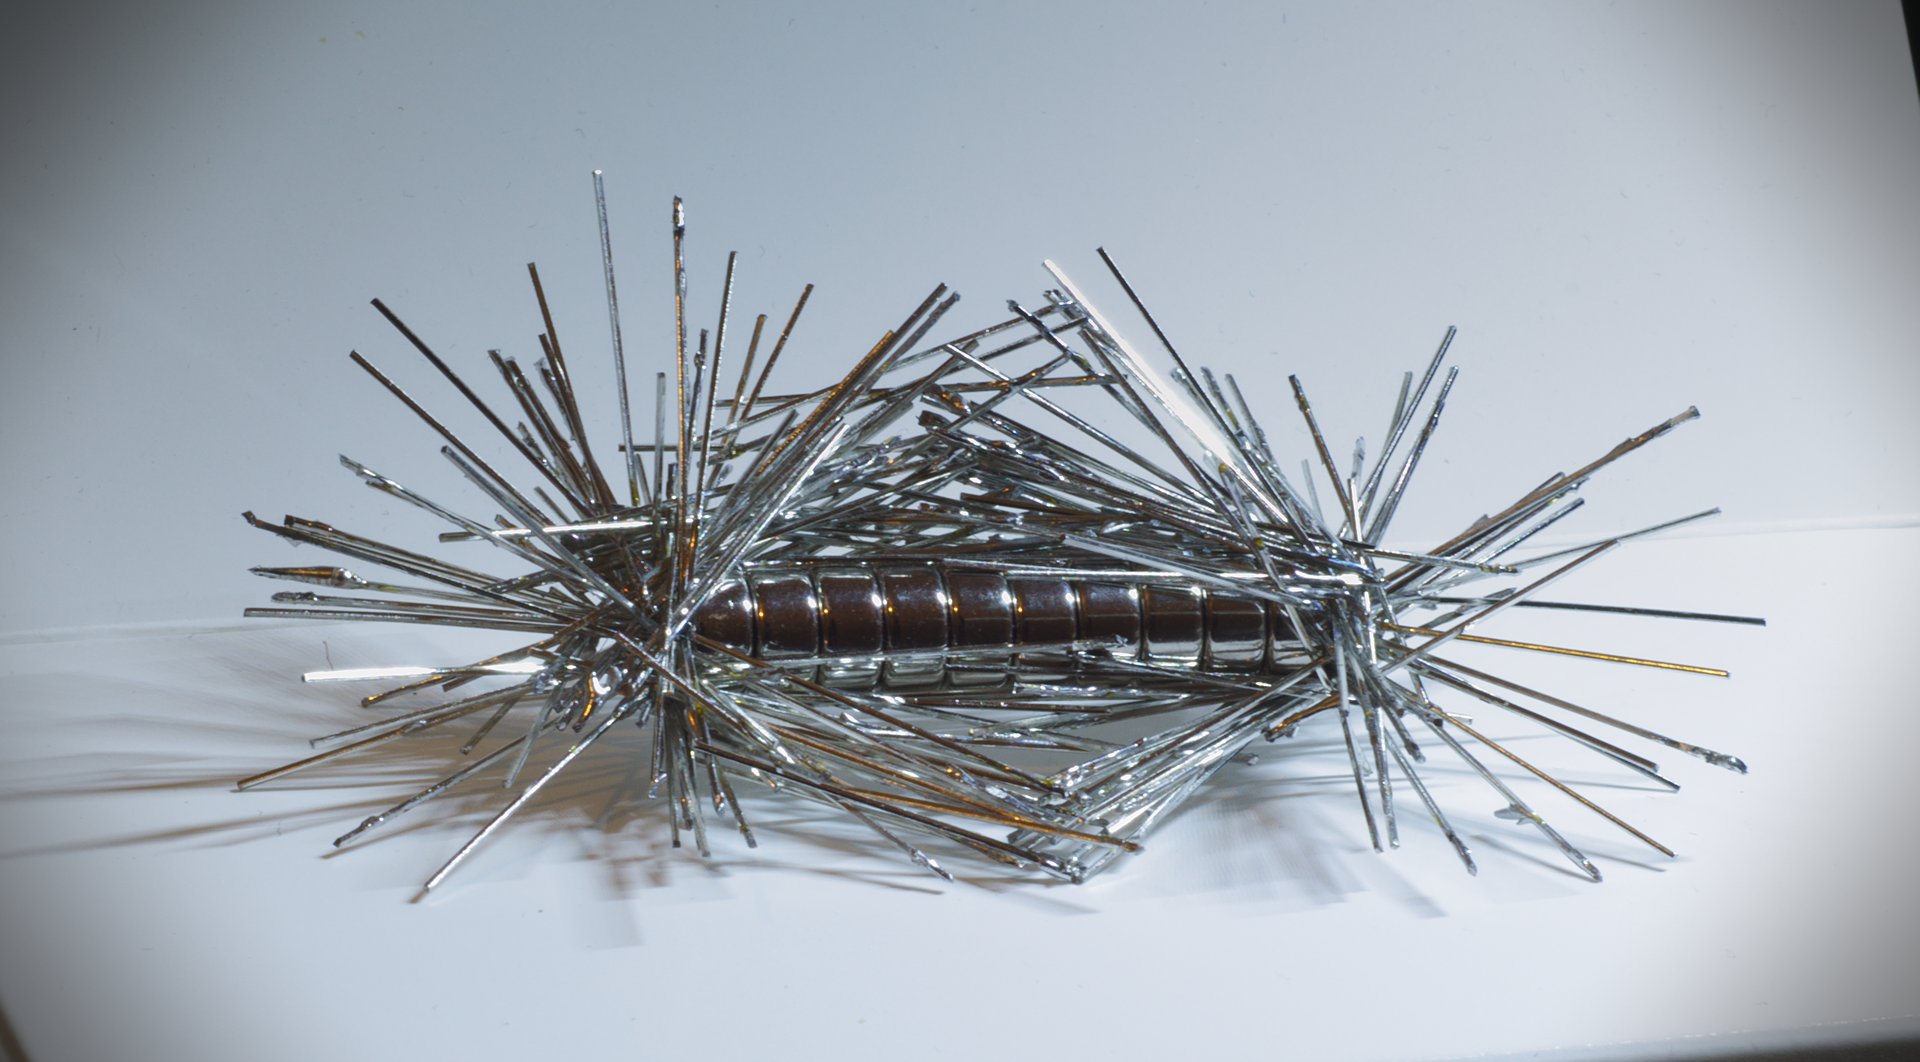 Zdjęcie drobnych przedmiotów (spinaczy, szpilek) przyciągniętych przez magnes